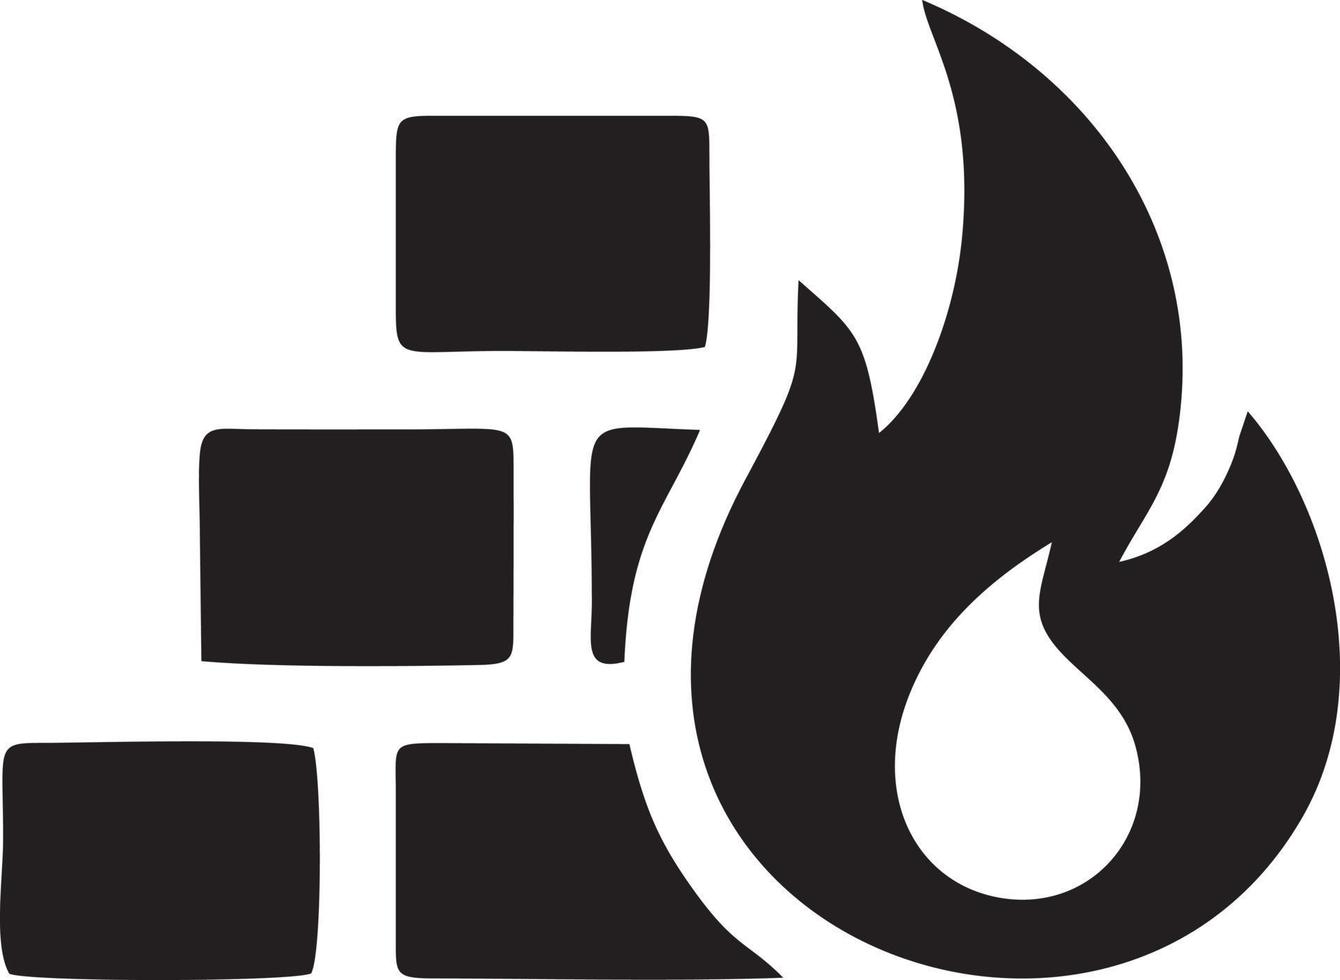 Feuer heiß Symbol Symbol Bild Vektor. Illustration von das Achtung Feuer brennen Bild Design. eps 10 vektor